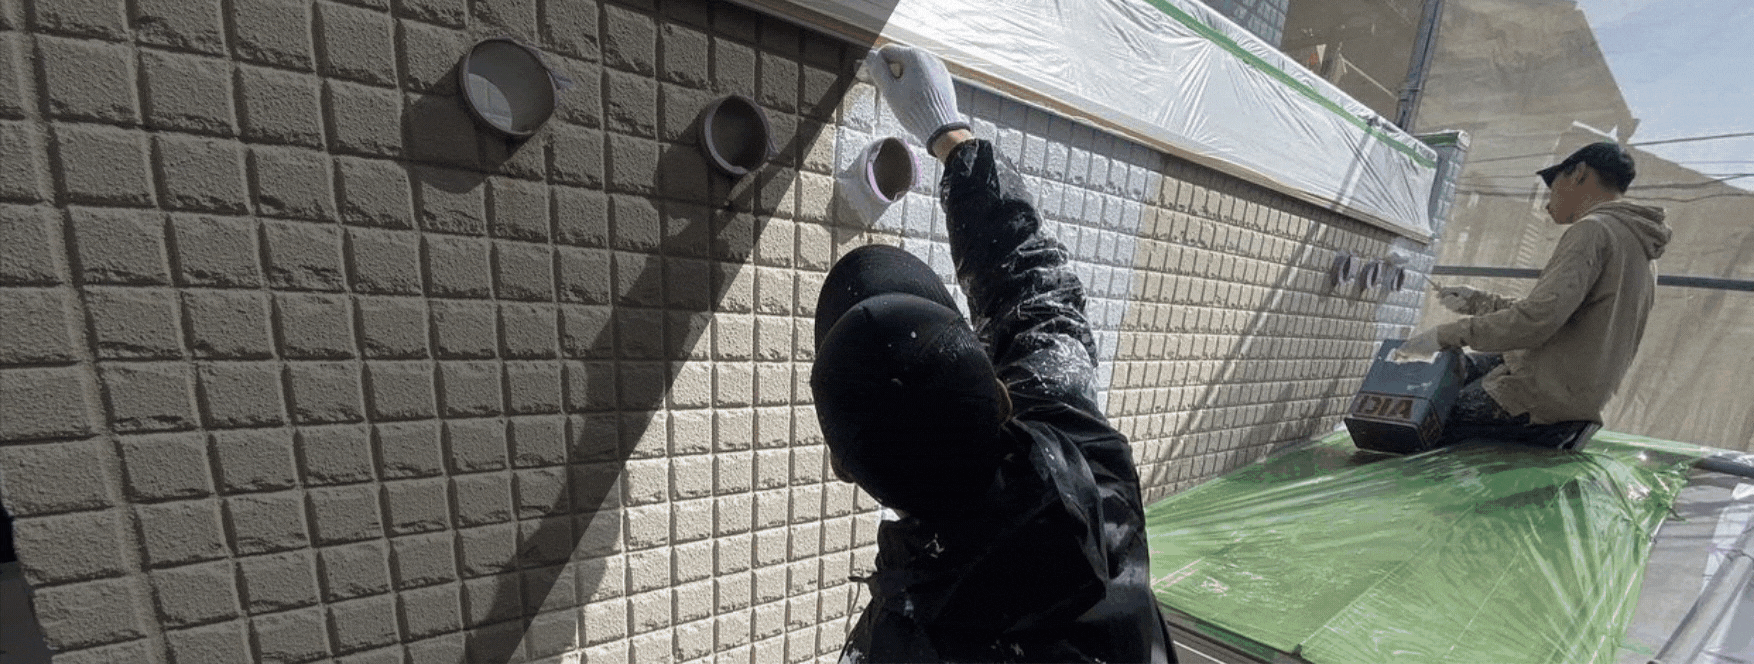 三重県 津市 外壁塗装 塗装屋 塗り替え 塗装工事 屋根塗装 ペンキ屋 内装塗装 防水工事 リフォーム工事